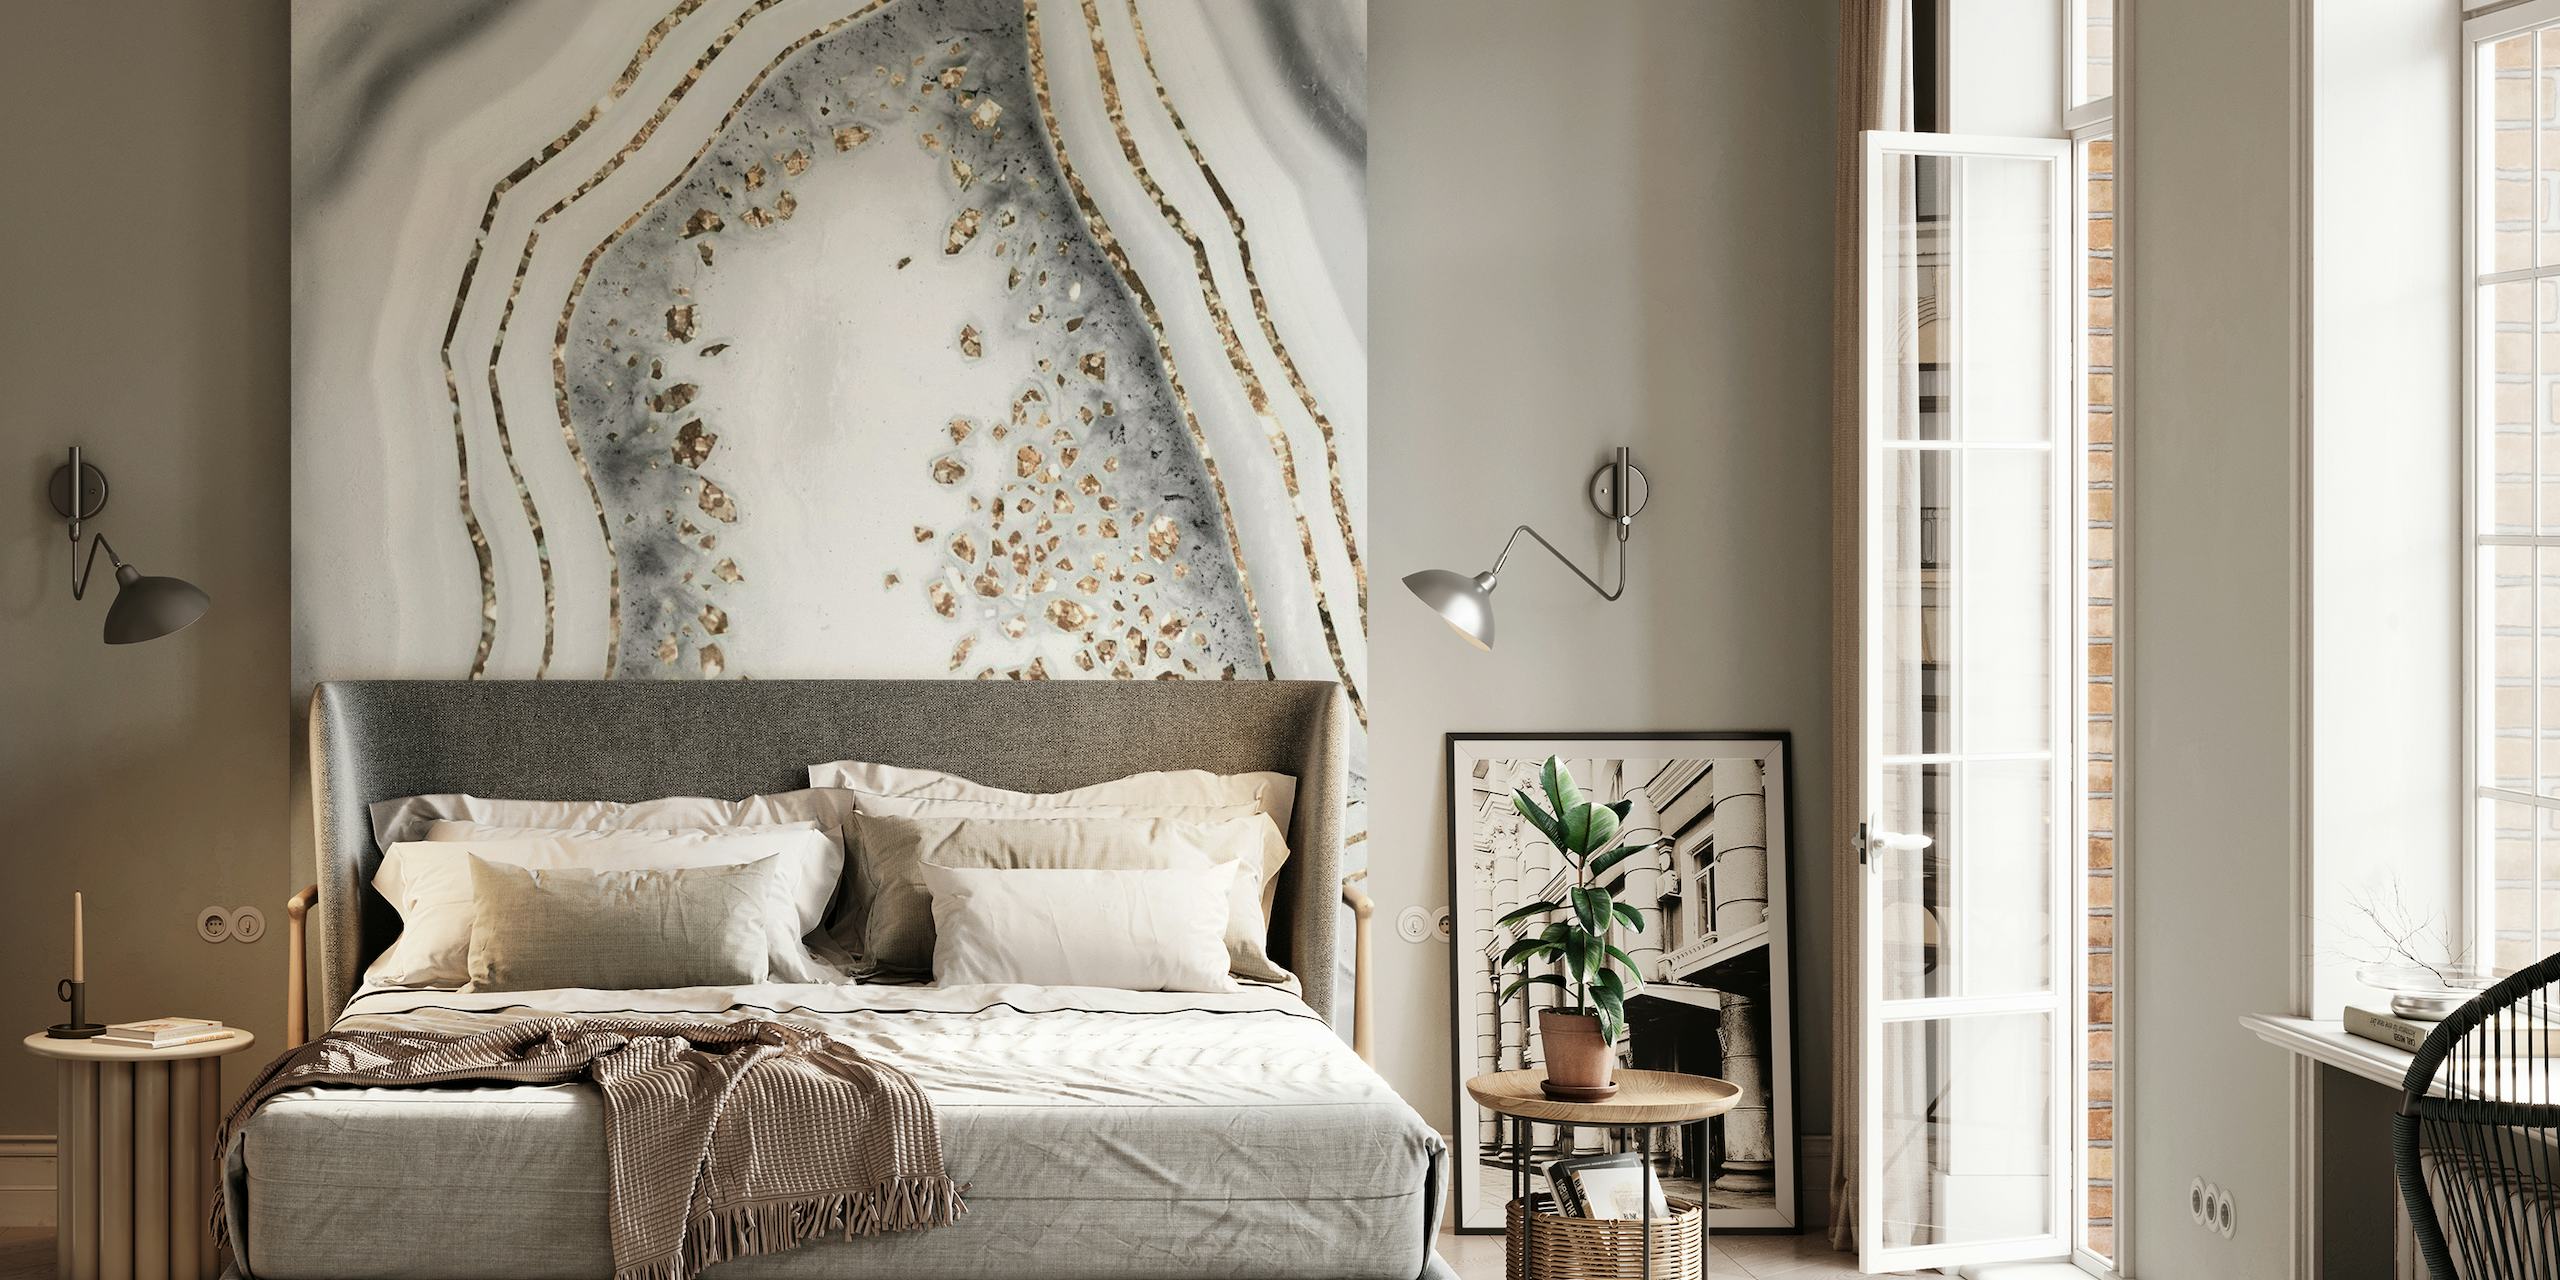 Elegante mural de parede inspirado em ágata com detalhes em glitter dourado